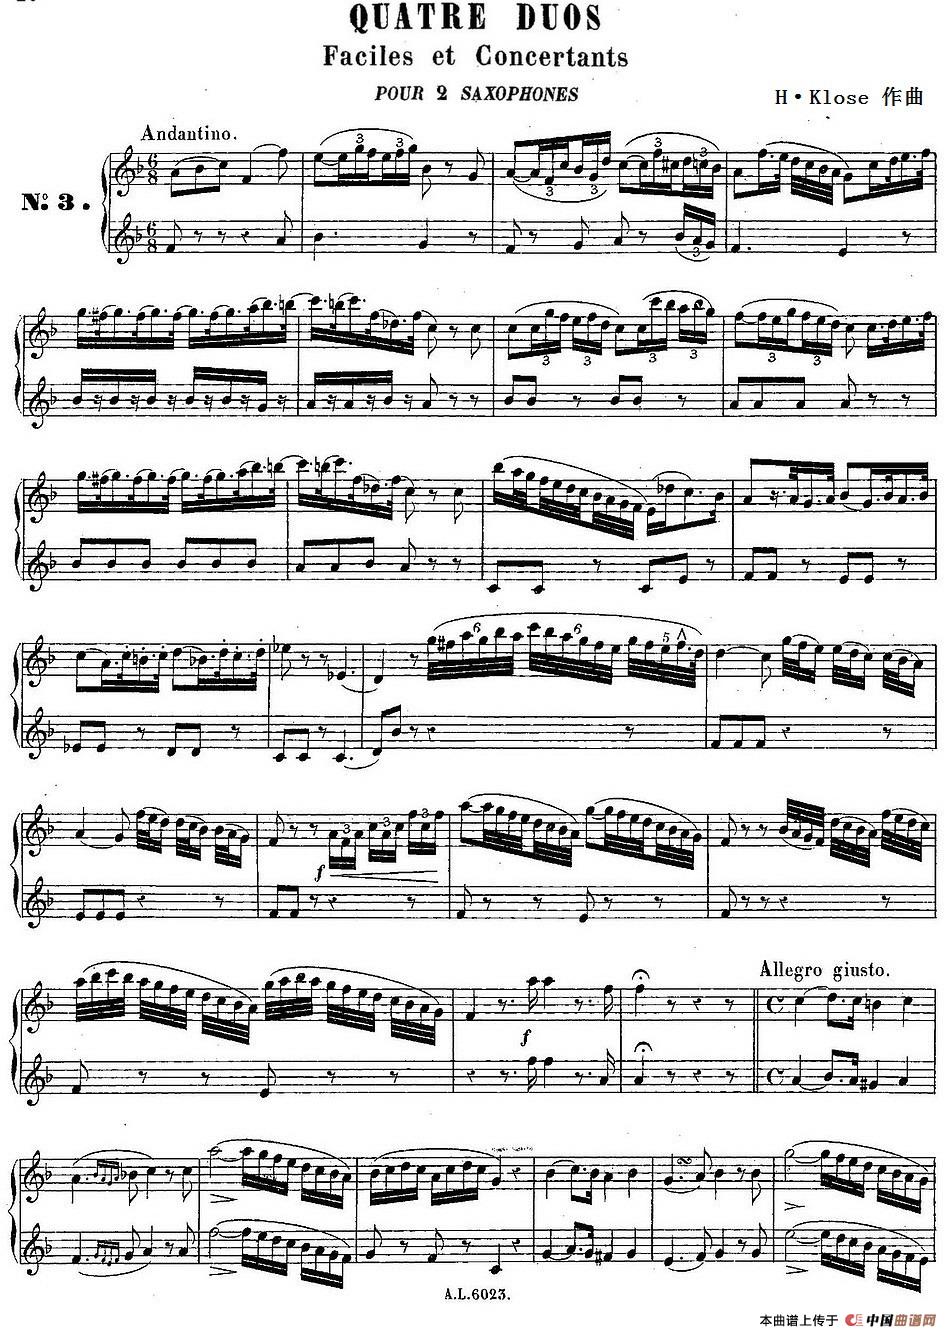 H·Klose练习曲（Quatre Duos Faciles et Concertants Pour 2 Saxophones—No.3）(1)_原文件名：HKlose二重奏练习曲_页面_36_缩小大小-.jpg